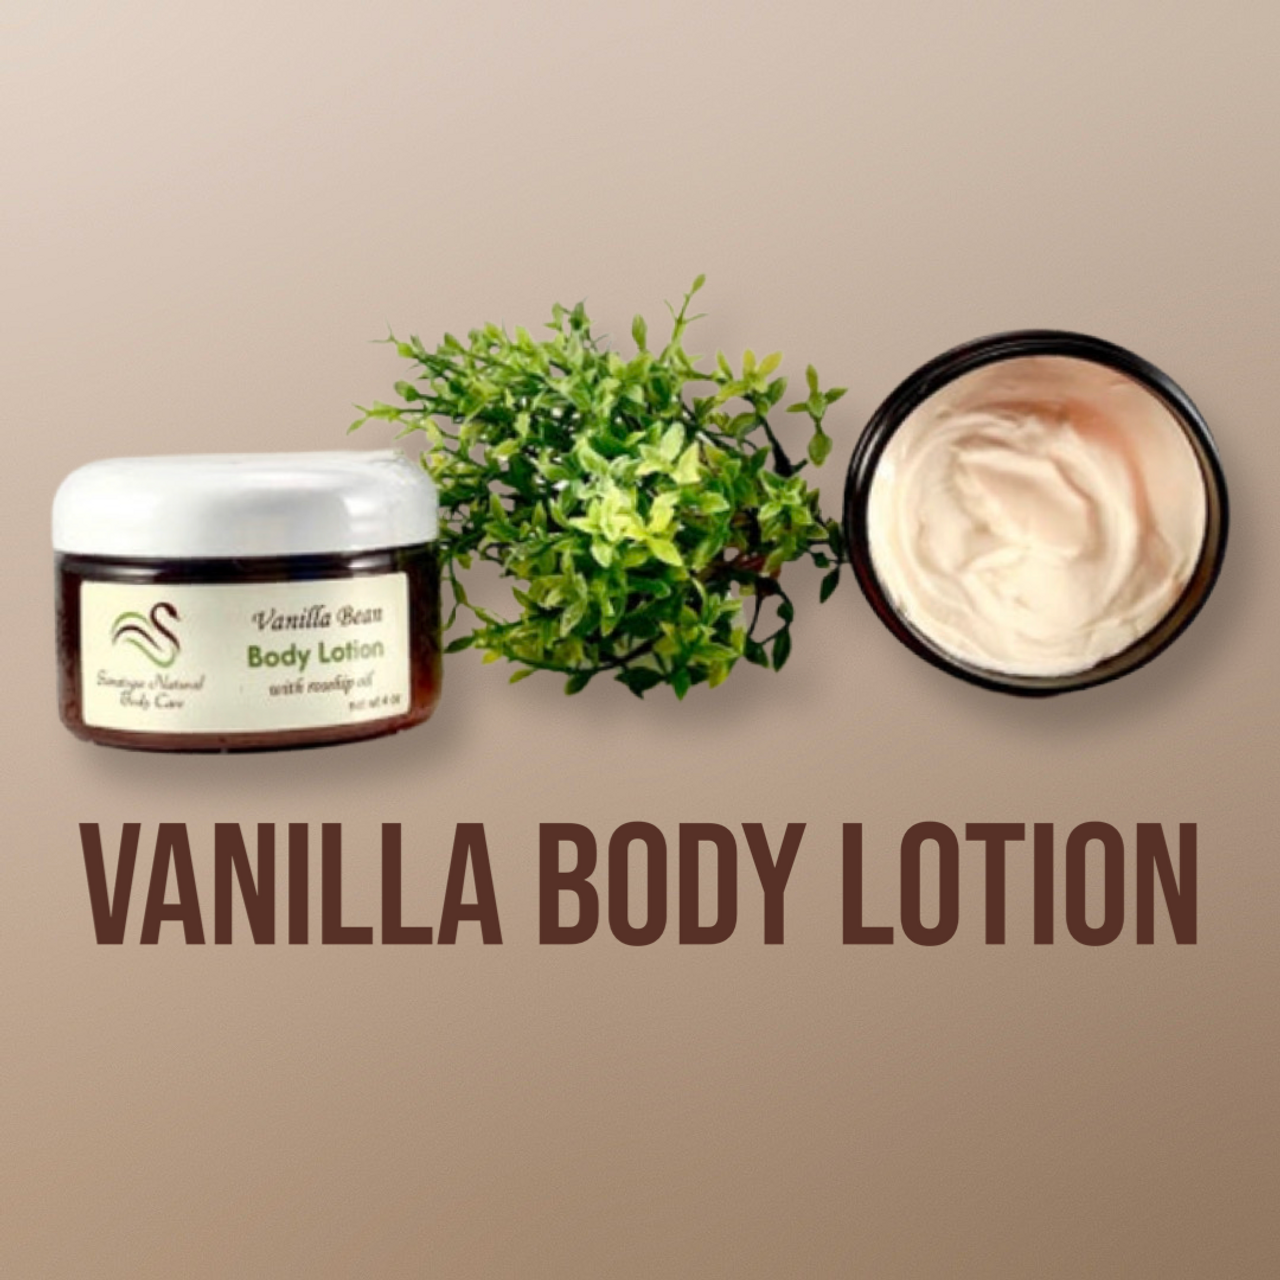 Vanilla Bean Lotion